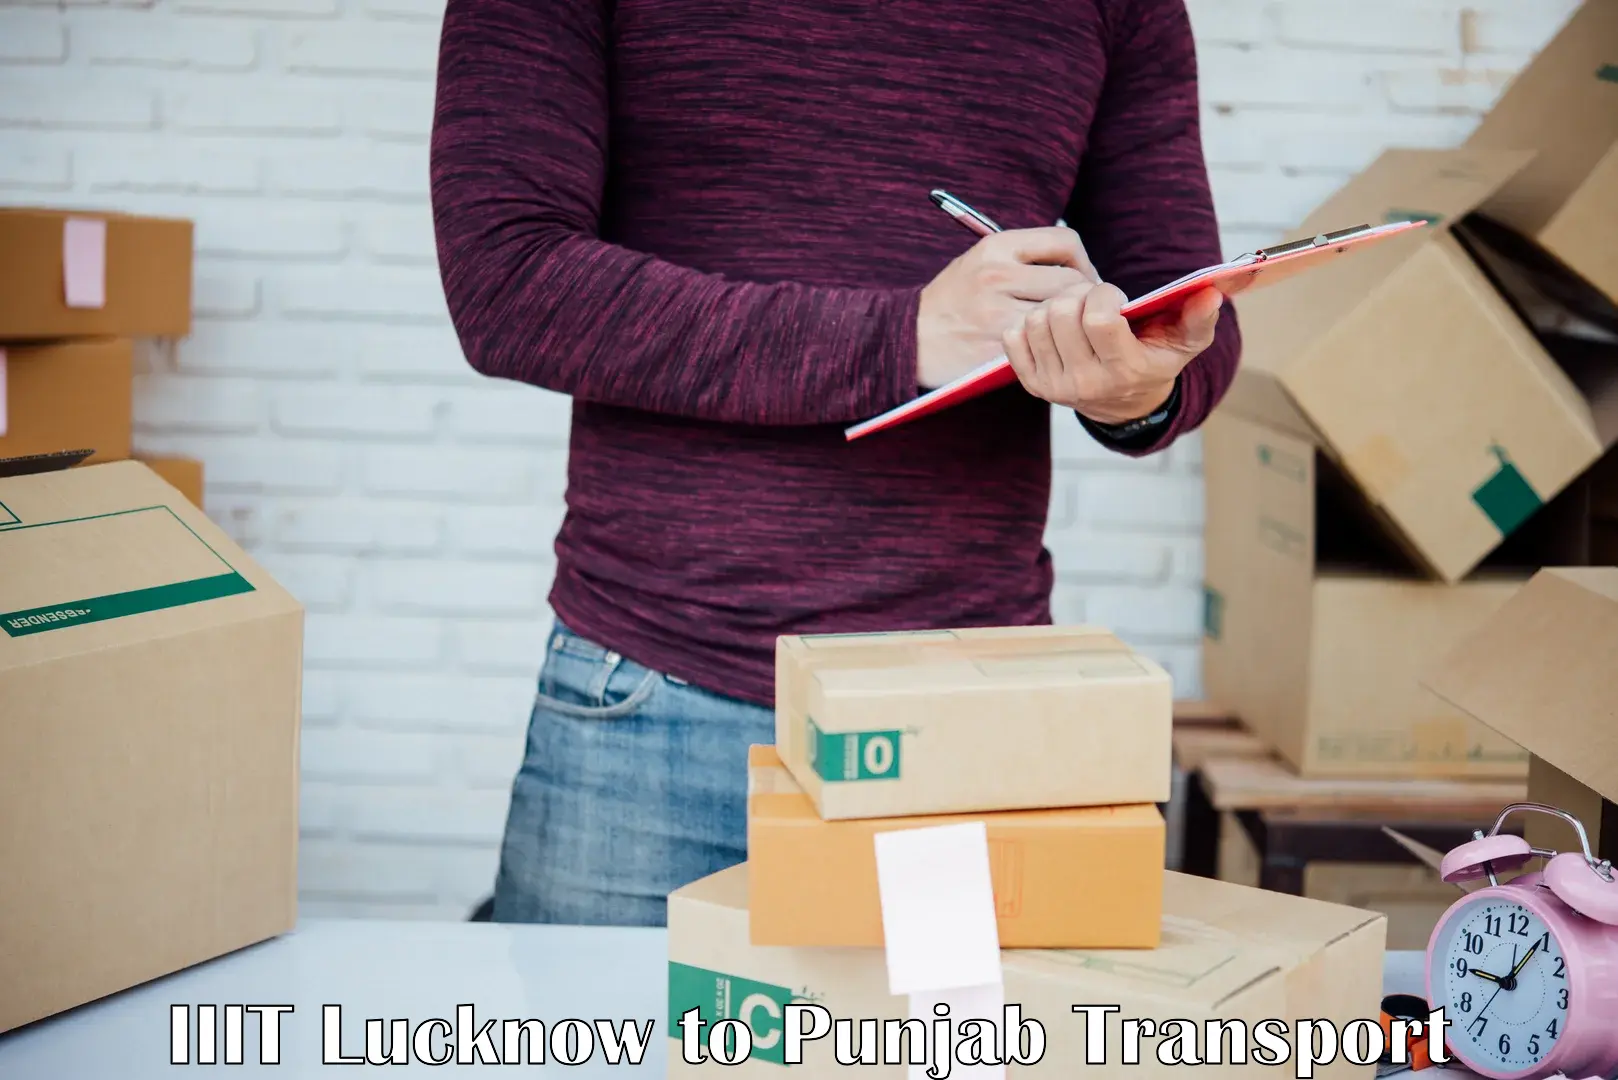 Road transport online services IIIT Lucknow to Zirakpur